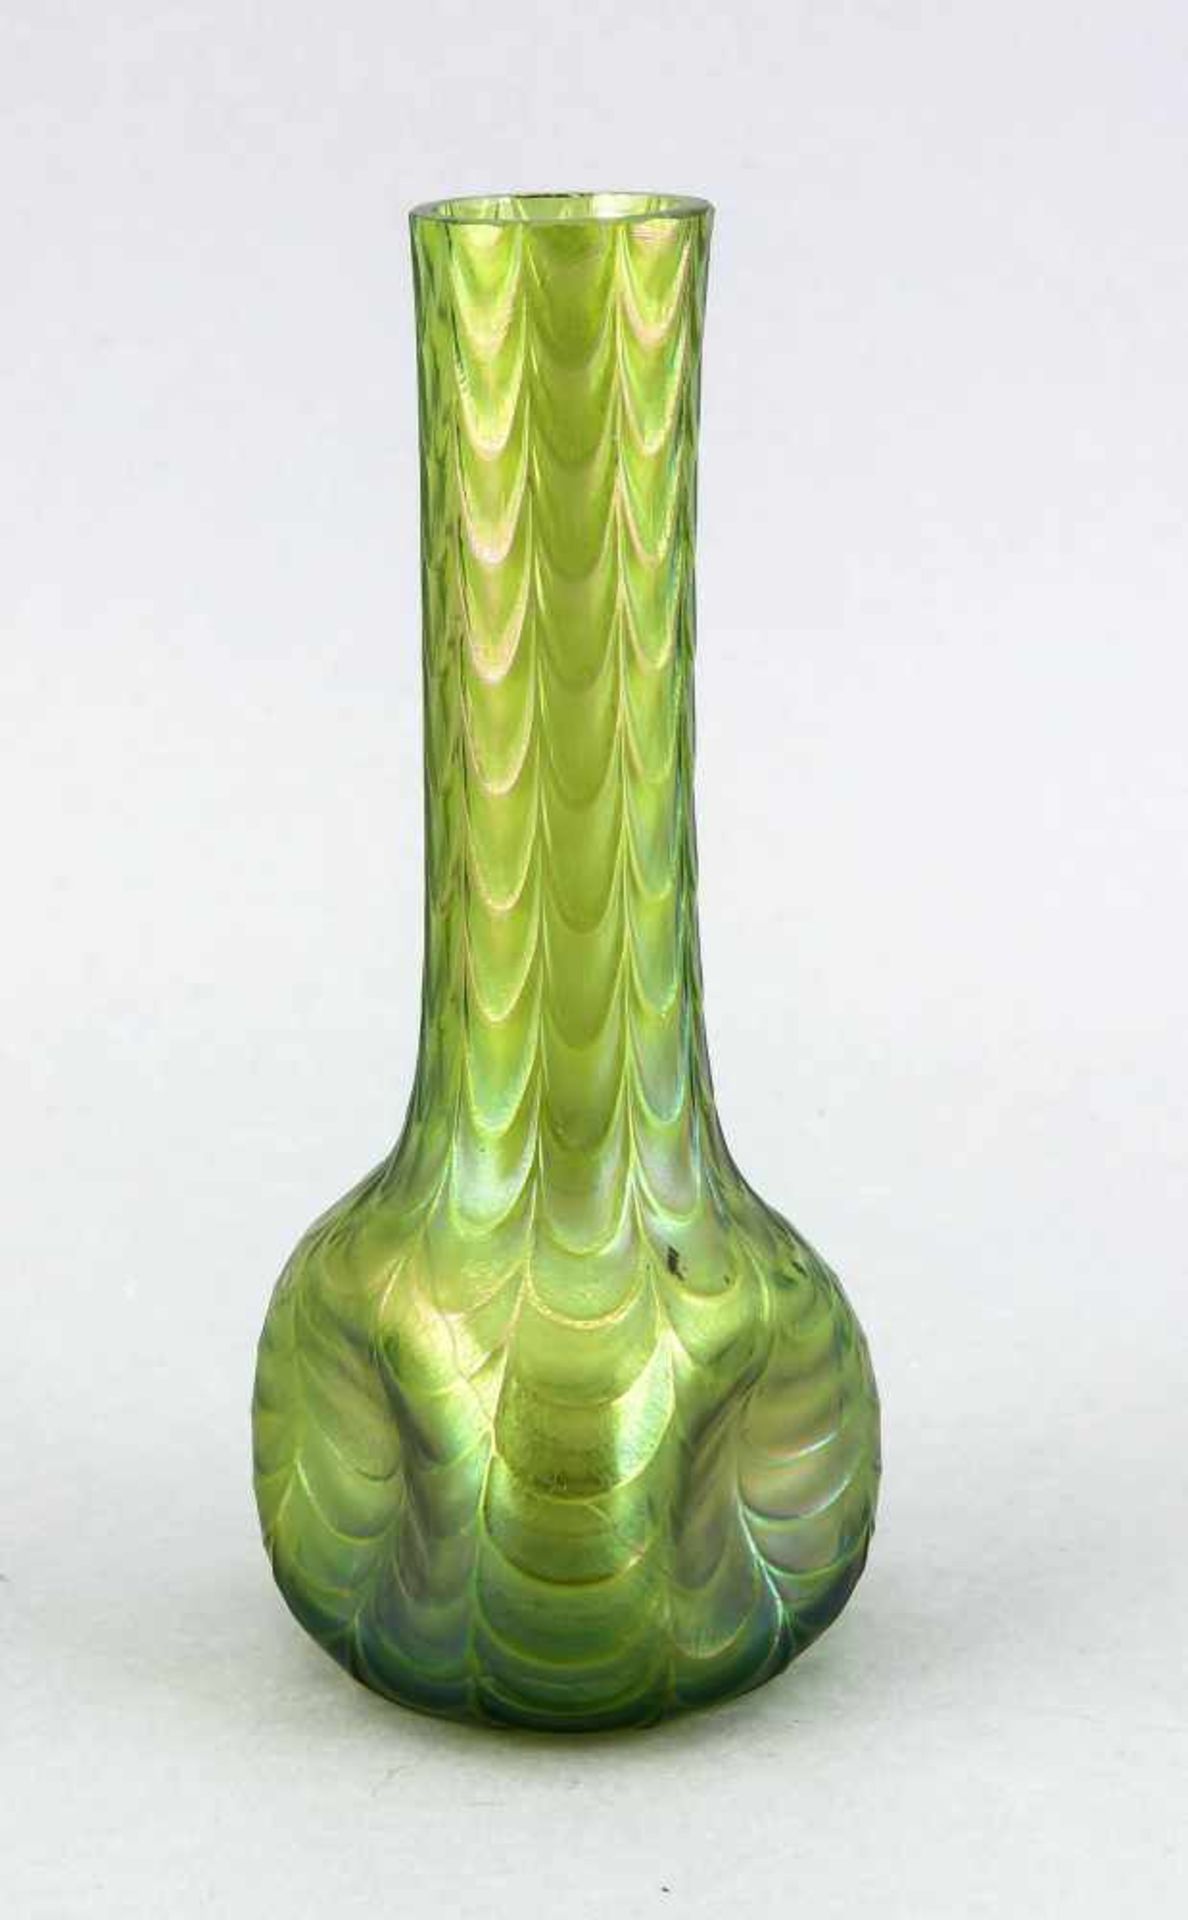 Vase, Böhmen, um 1900/10, grünes Glas, violett-blau irisierend, gedrückte Dreiecksform, umlaufend in